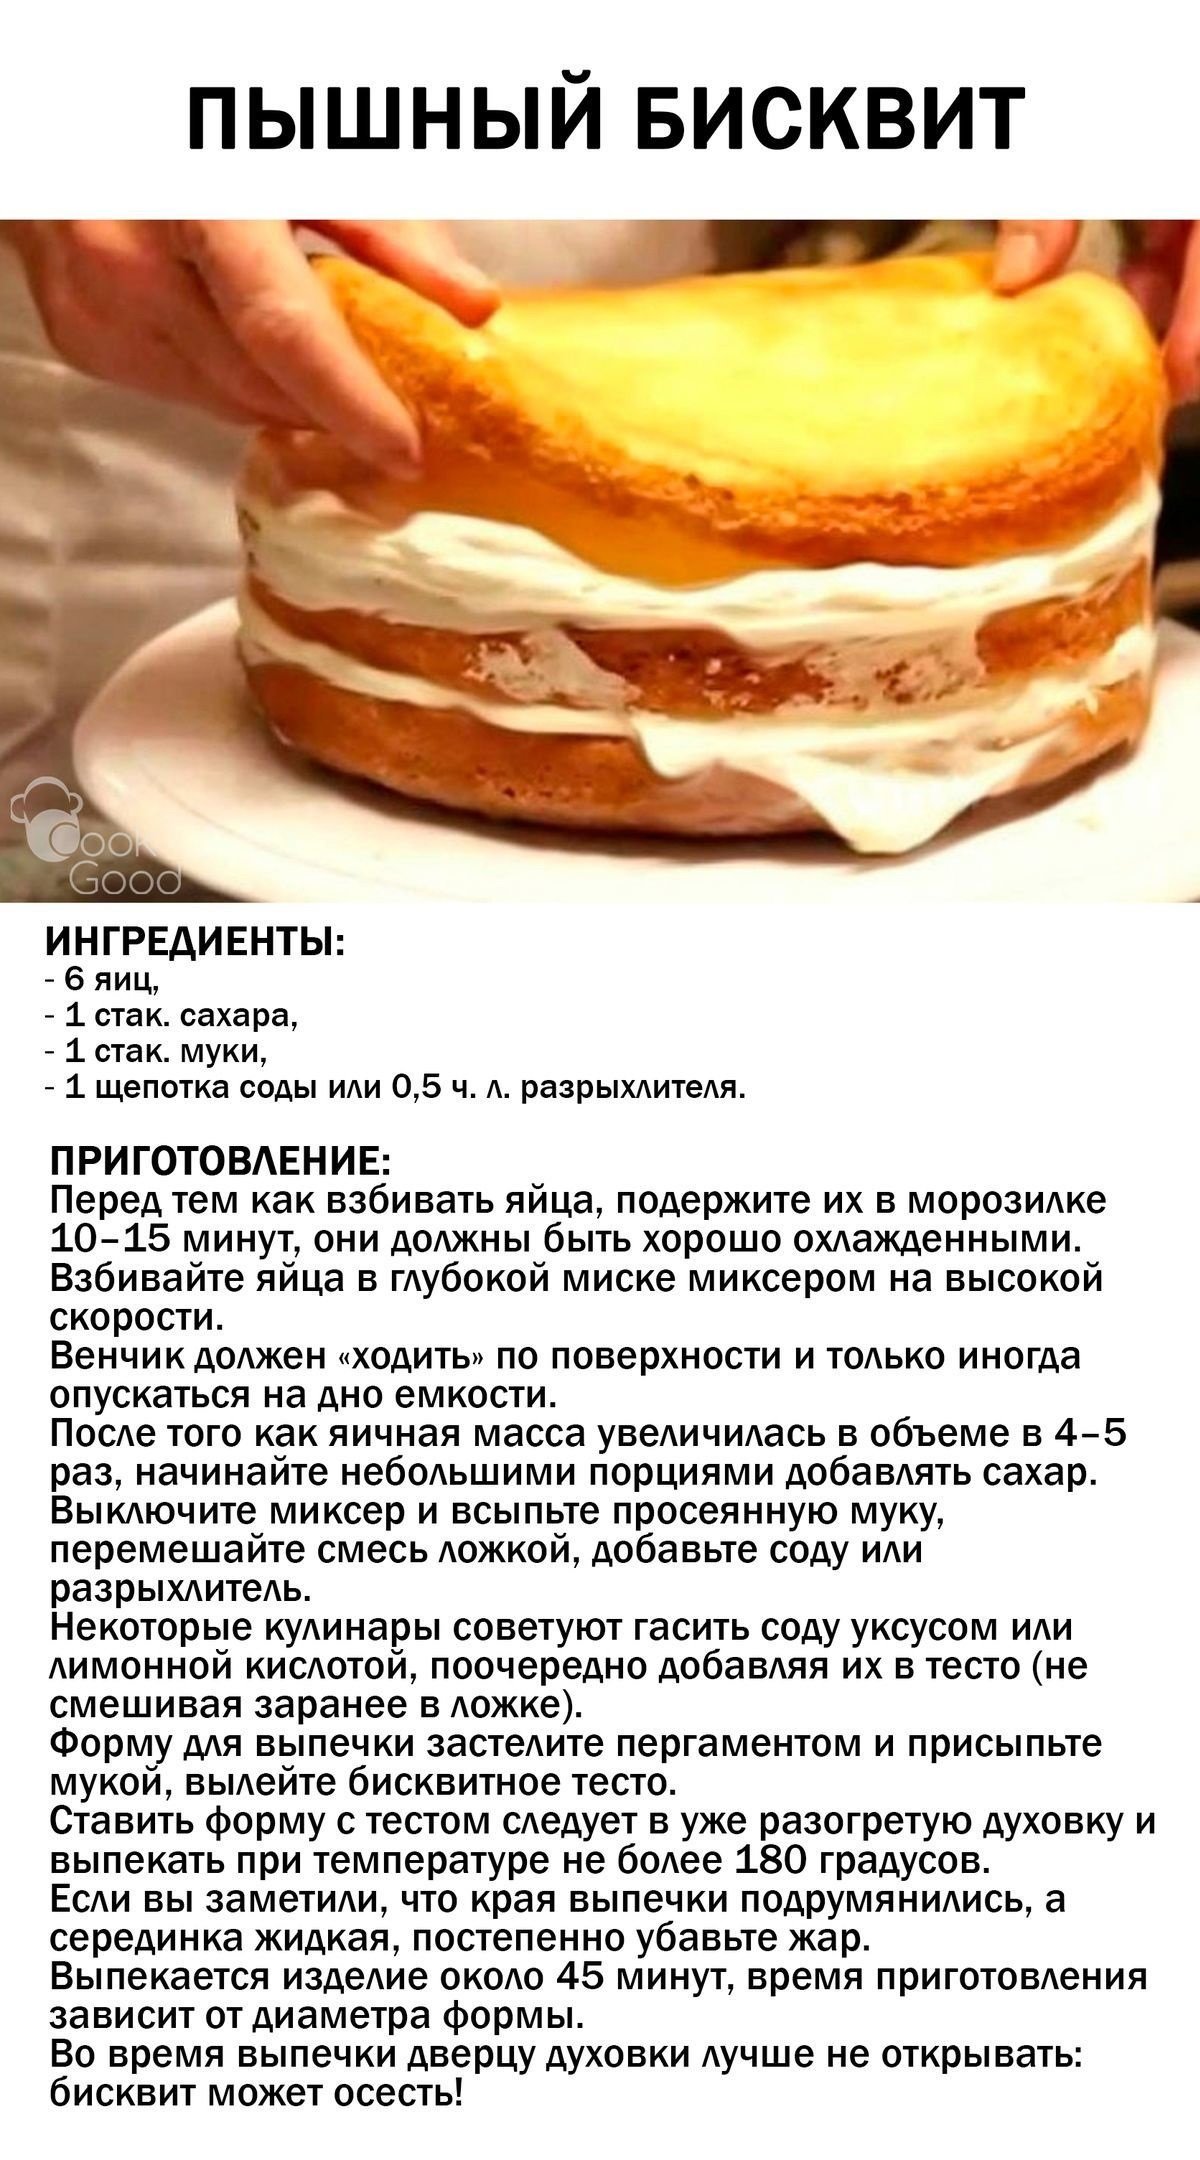 Рецепт теста для тортов в духовке. Рецепт приготовления бисквита для торта. Рецепт вкусного бисквита для торта в домашних. Рецепт бисквита для торта классический. Бисквит рецепт пышный.